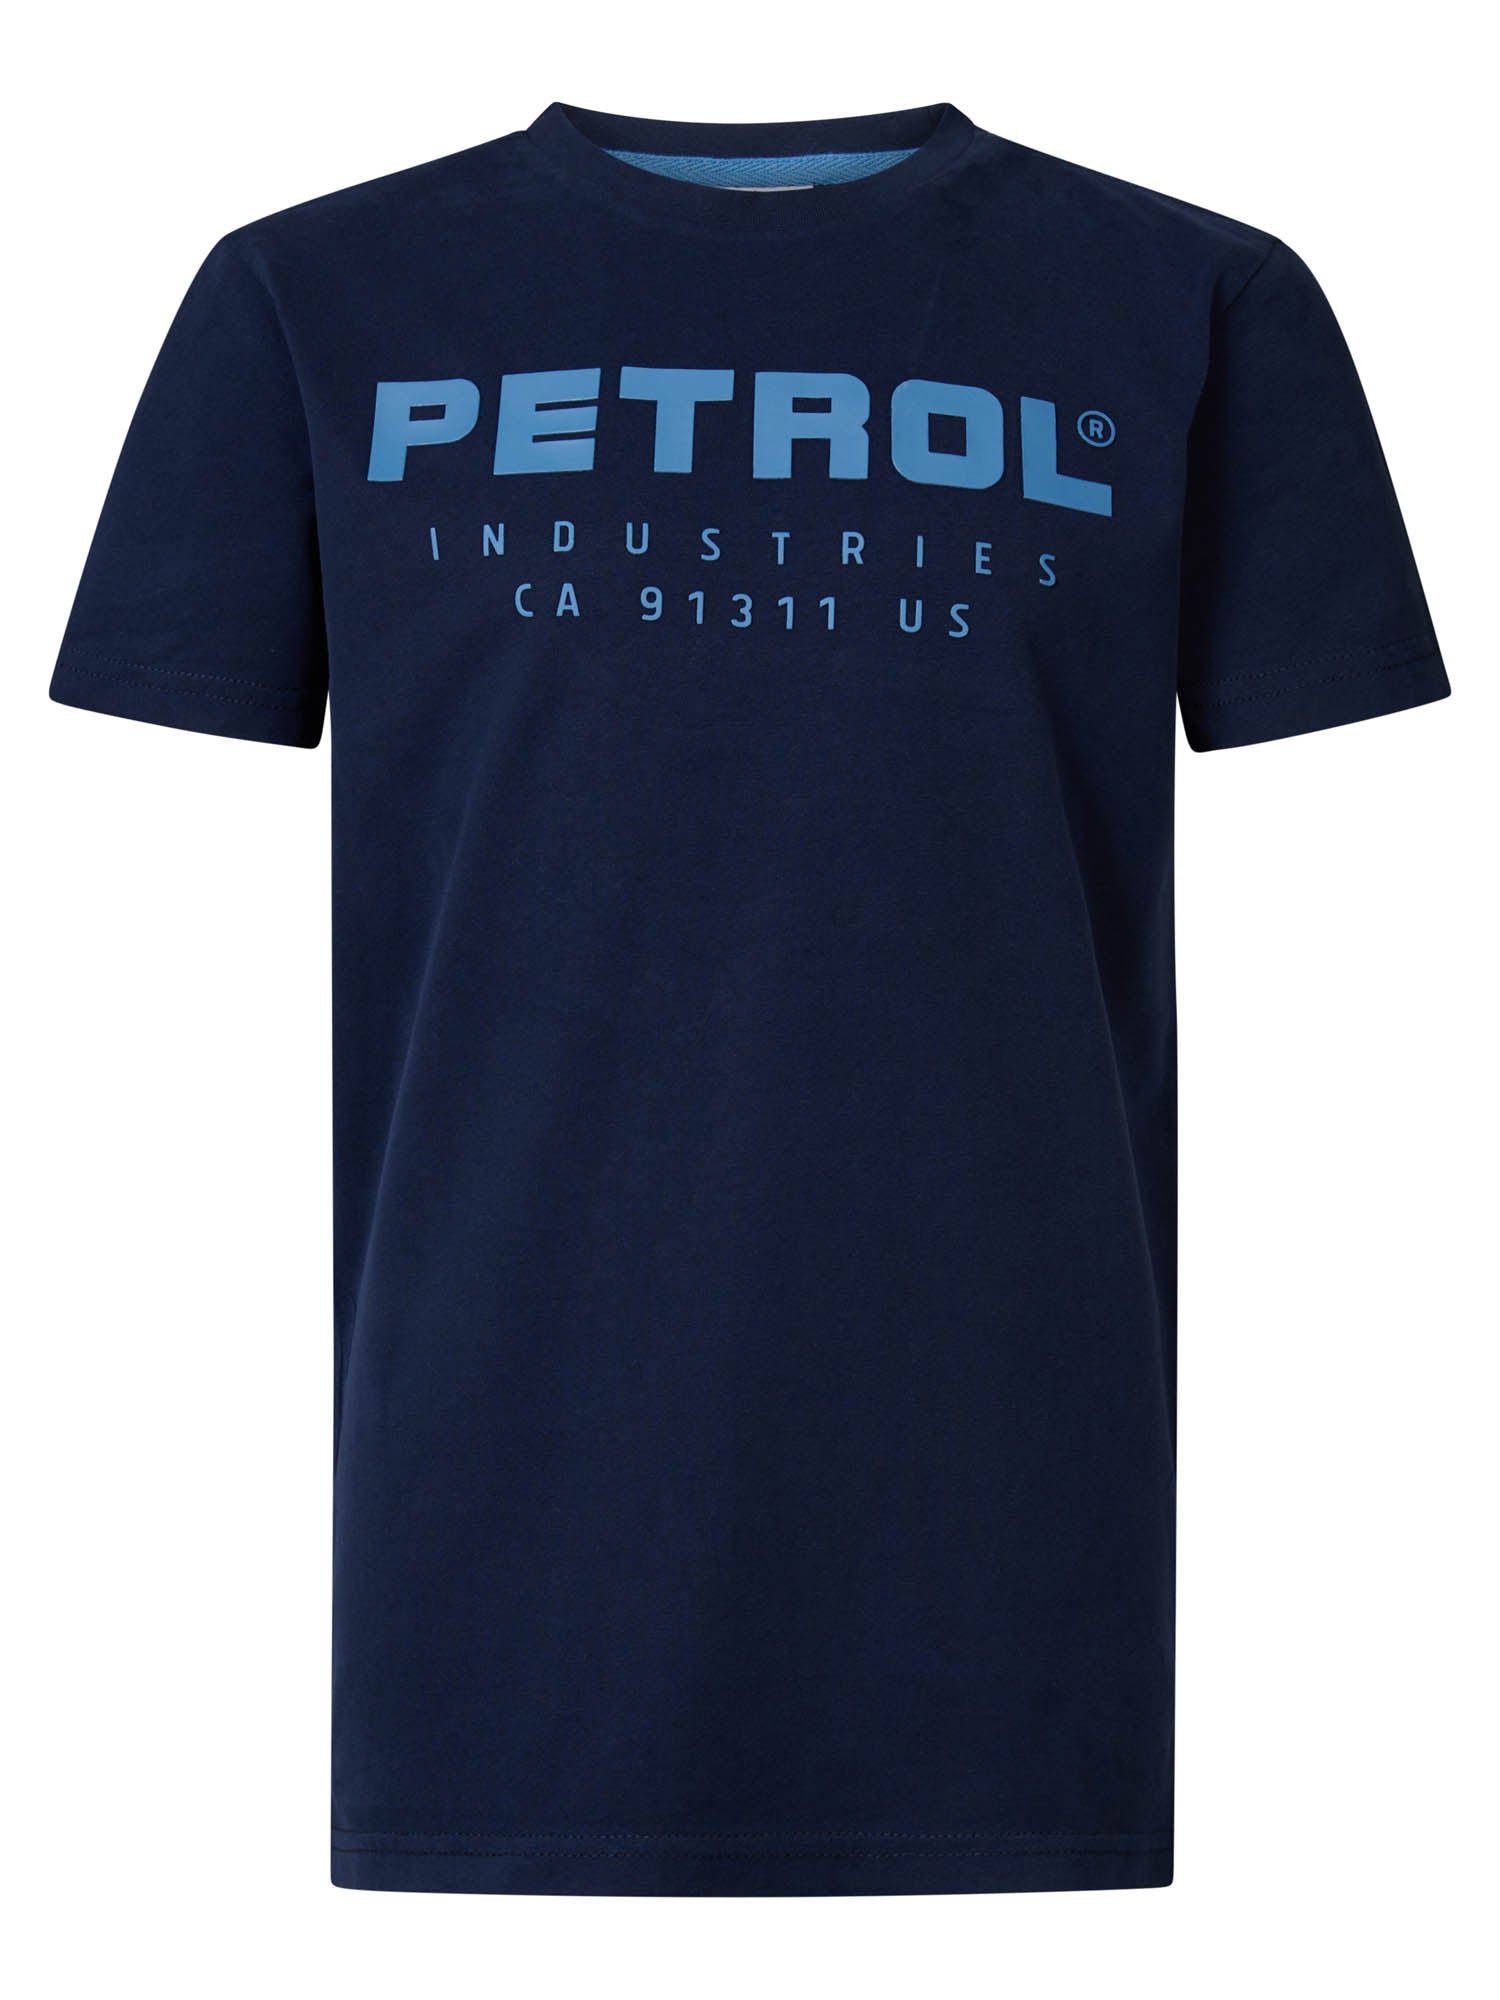 Petrol Industries Logo Artwork T-shirt Midnight Navy - 92